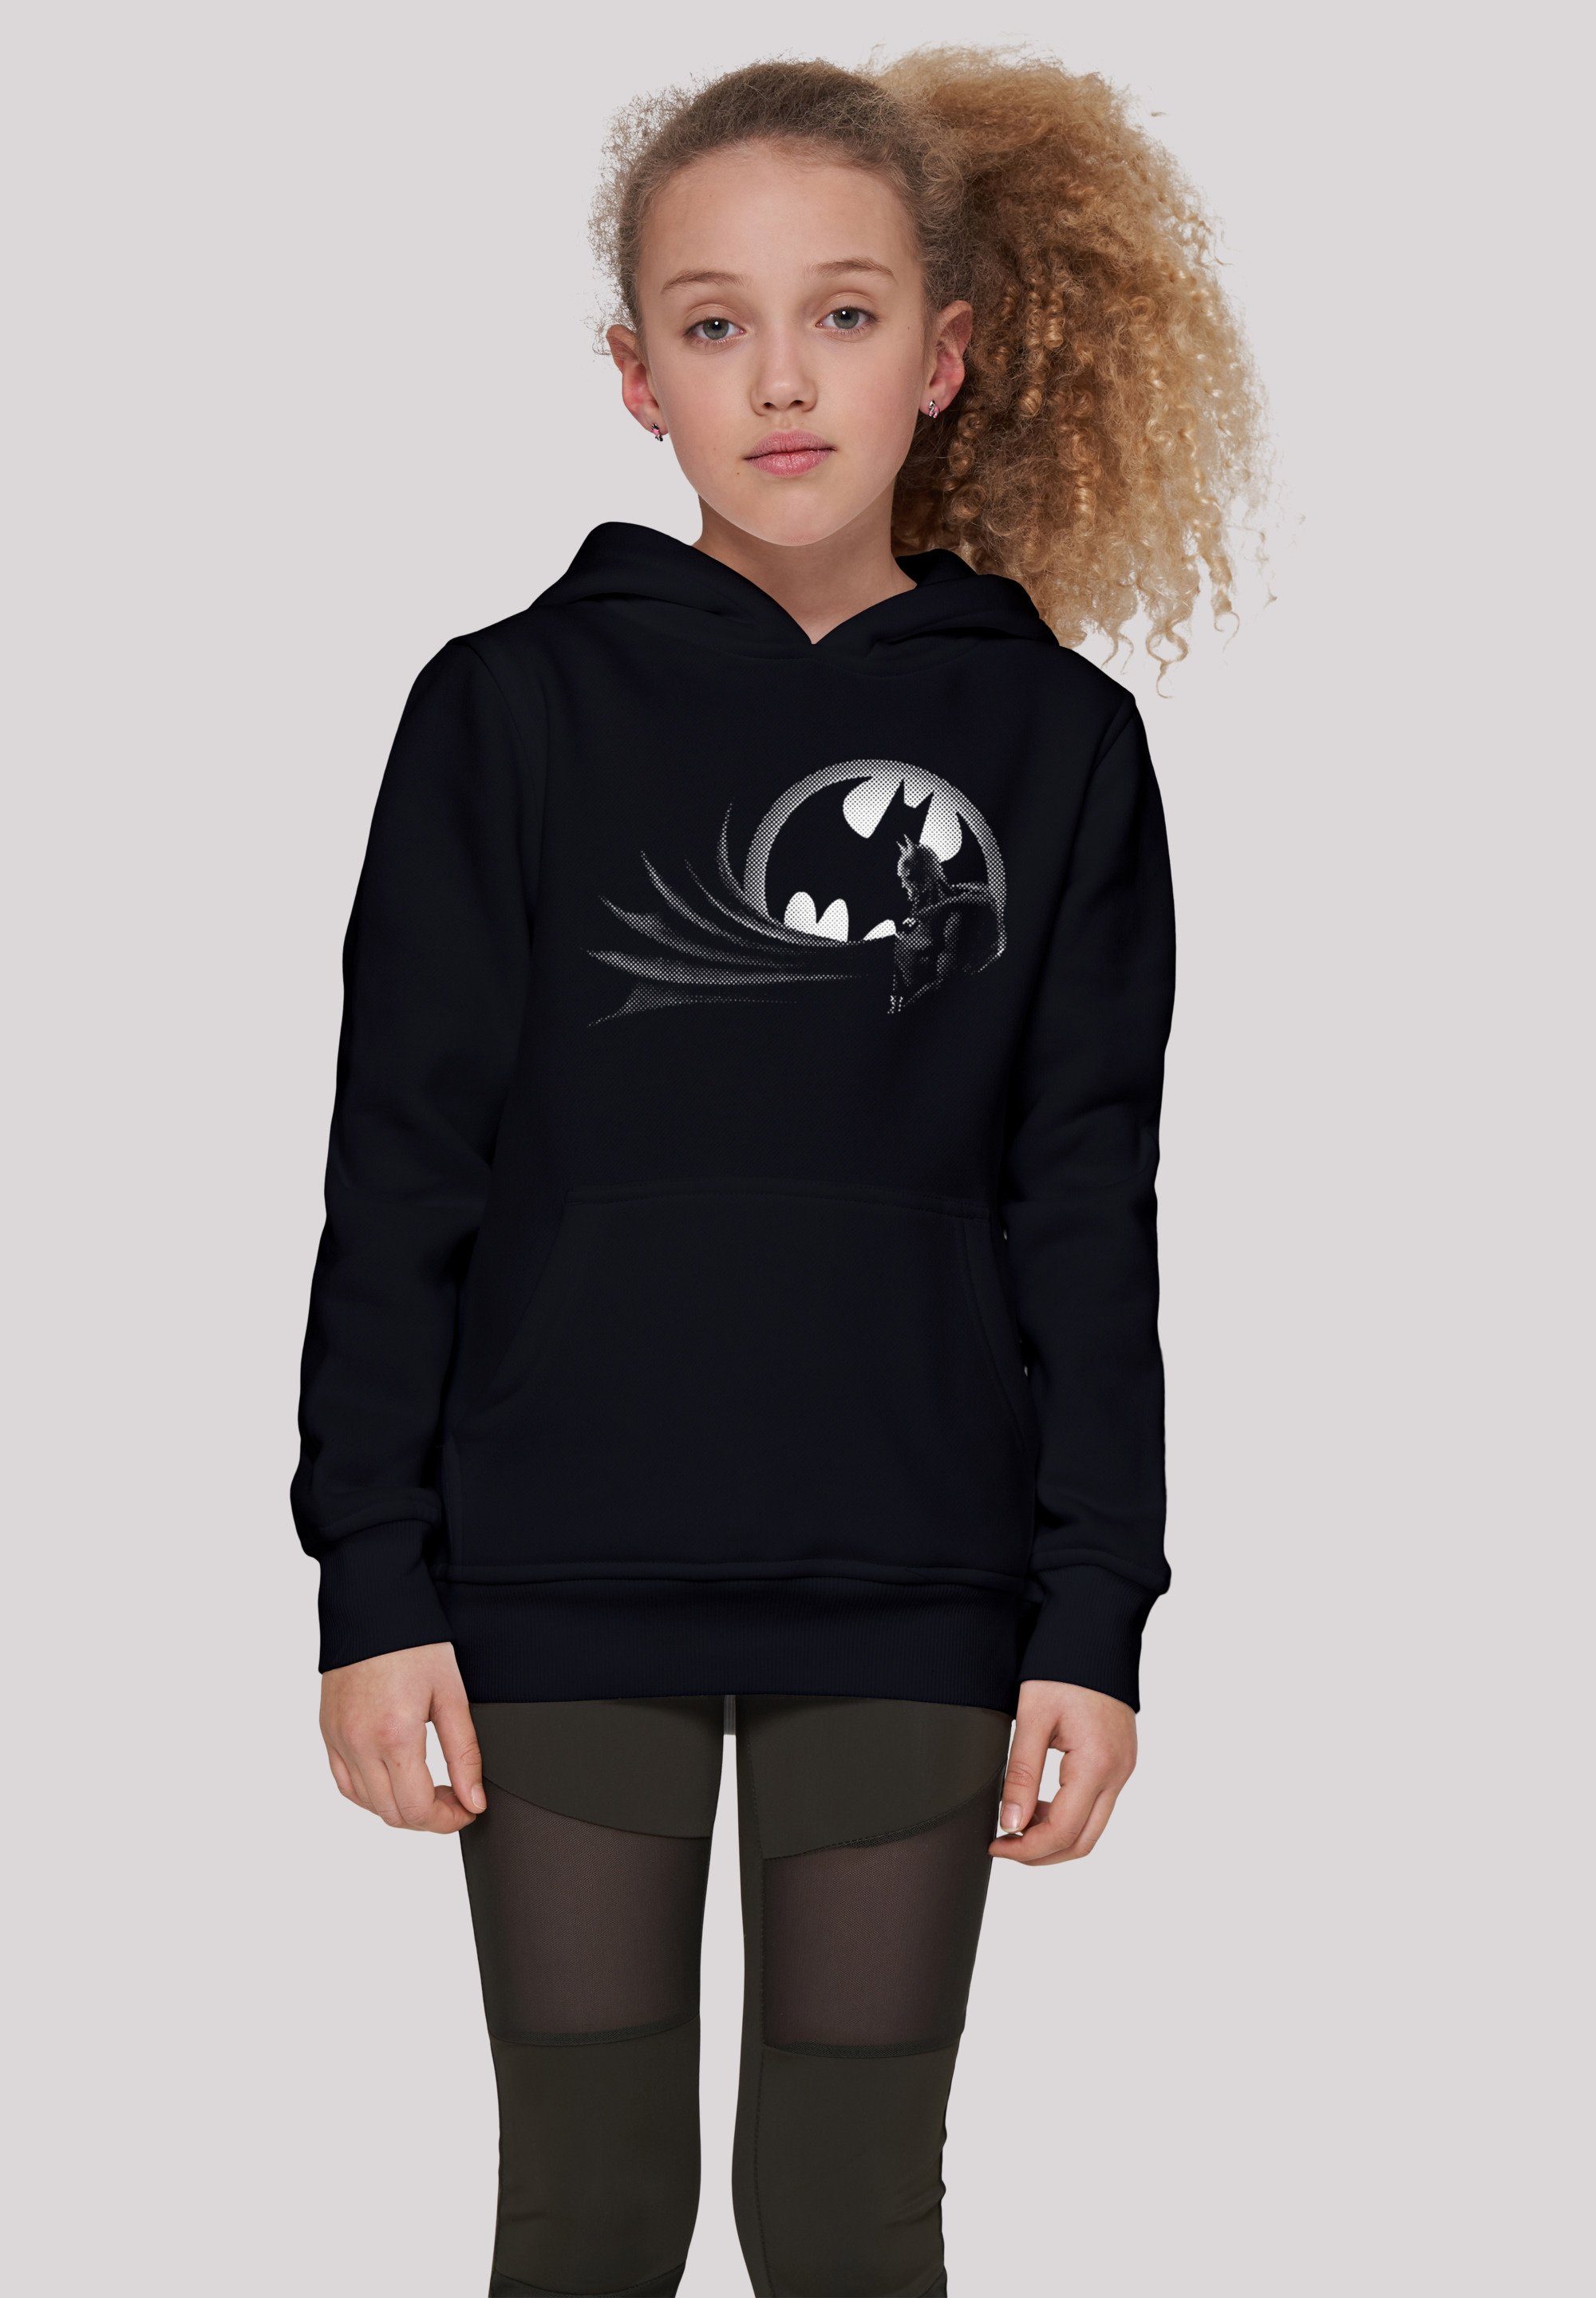 F4NT4STIC Sweatshirt DC Comics Batman Spot Logo Kinder,Premium Unisex Merch,Jungen,Mädchen,Bedruckt